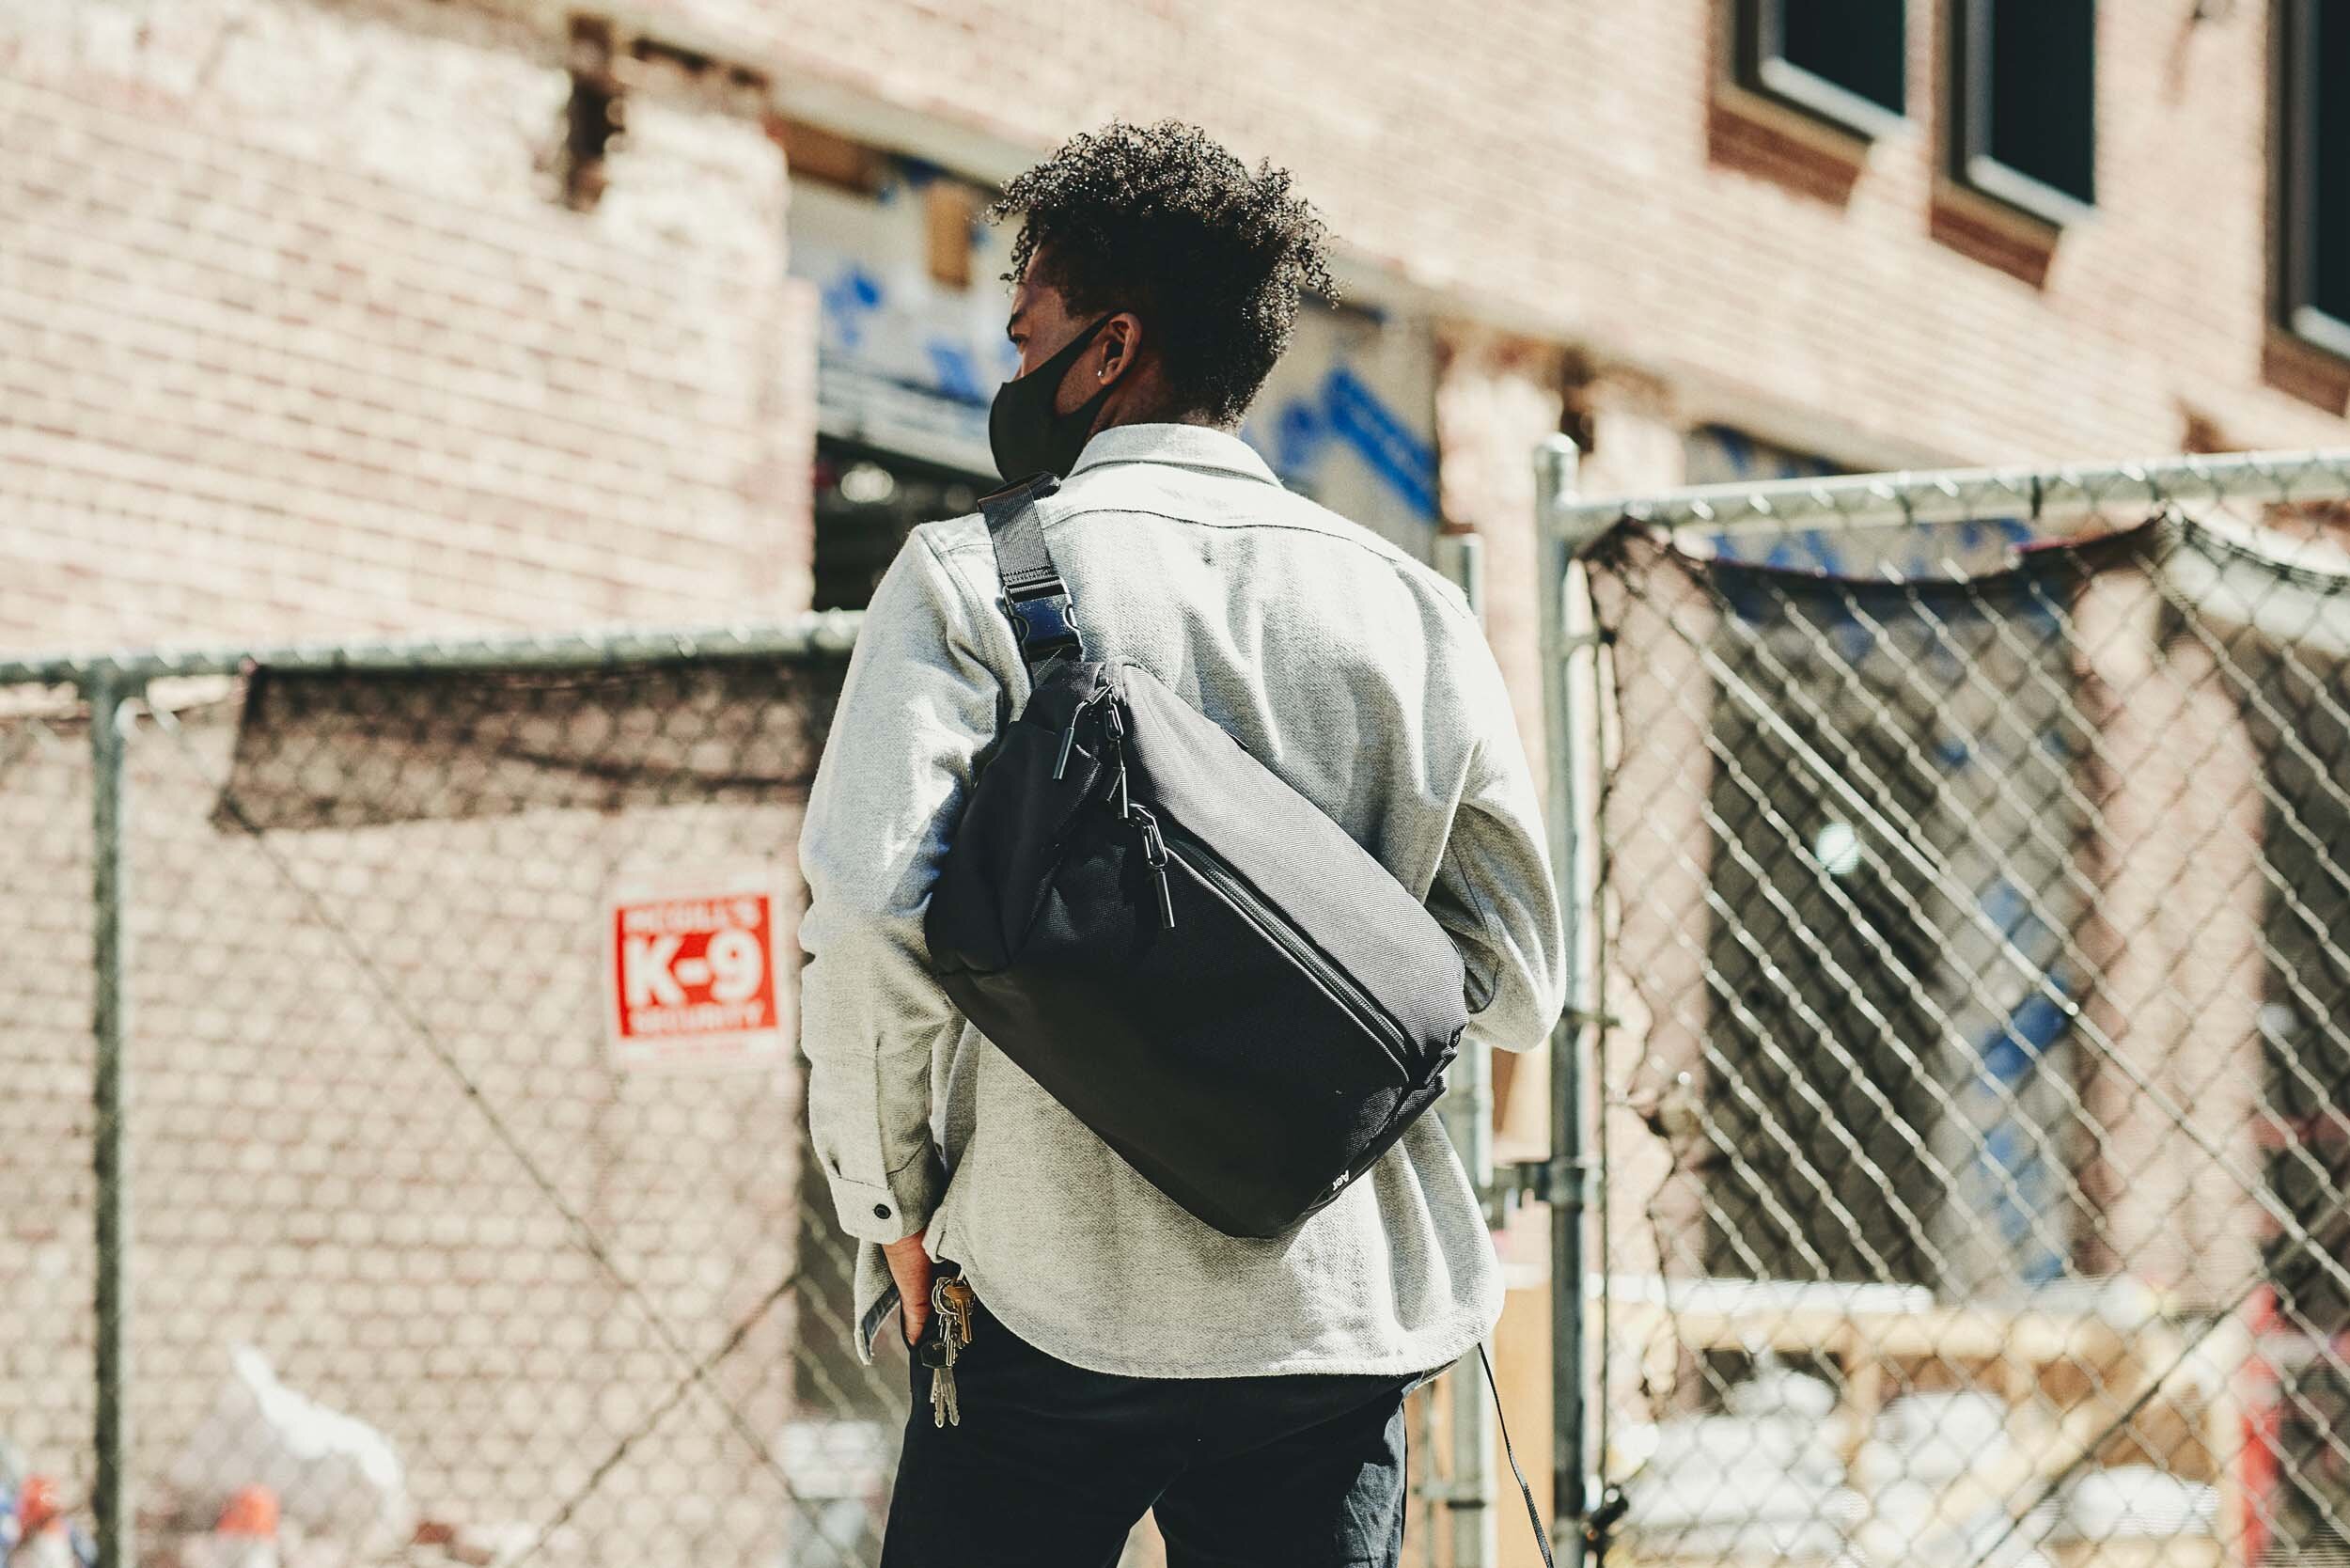 City Messenger - Gray — Aer | Modern gym bags, travel backpacks 